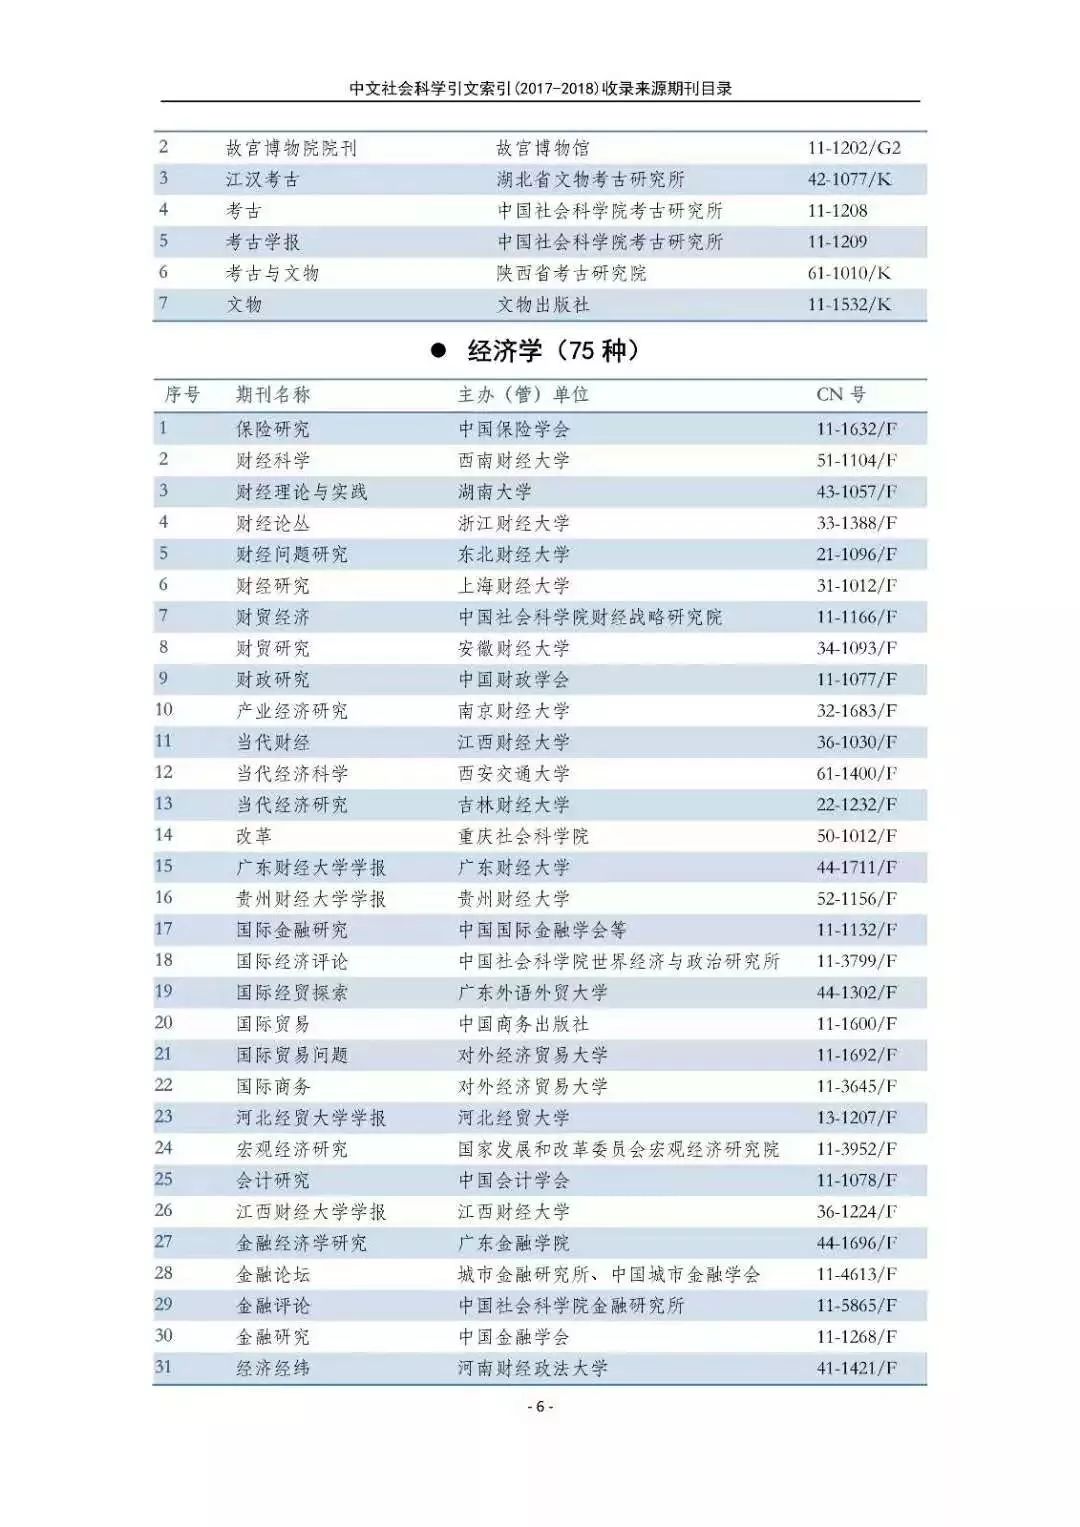 南大核心CSSCI最全名单(官网发布)!